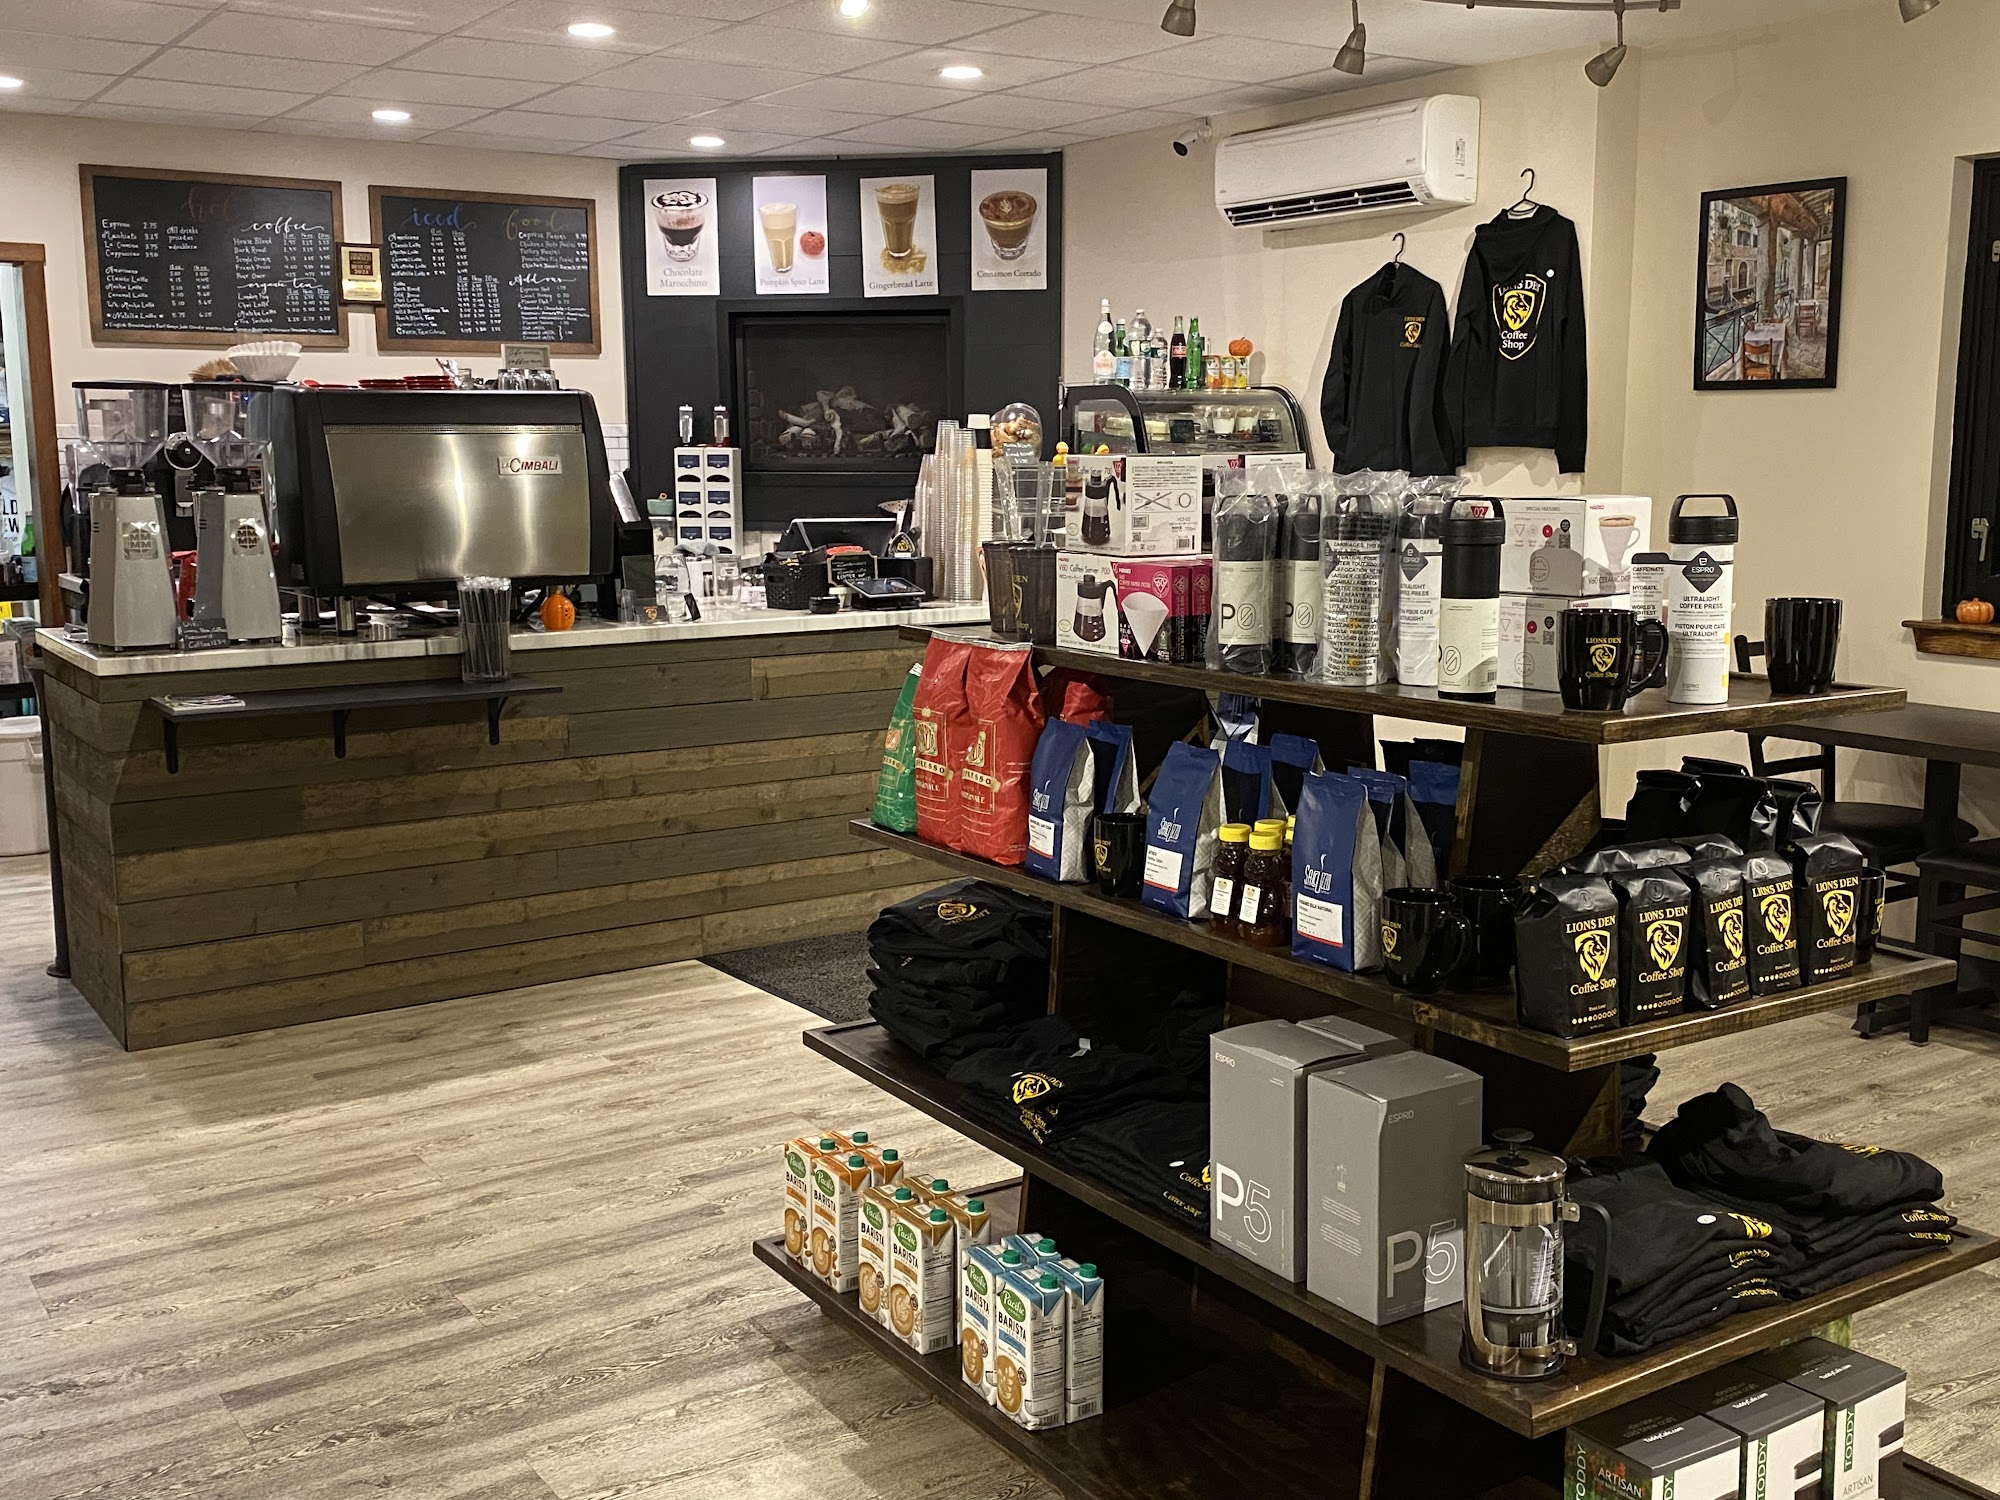 Lions Den Coffee Shop